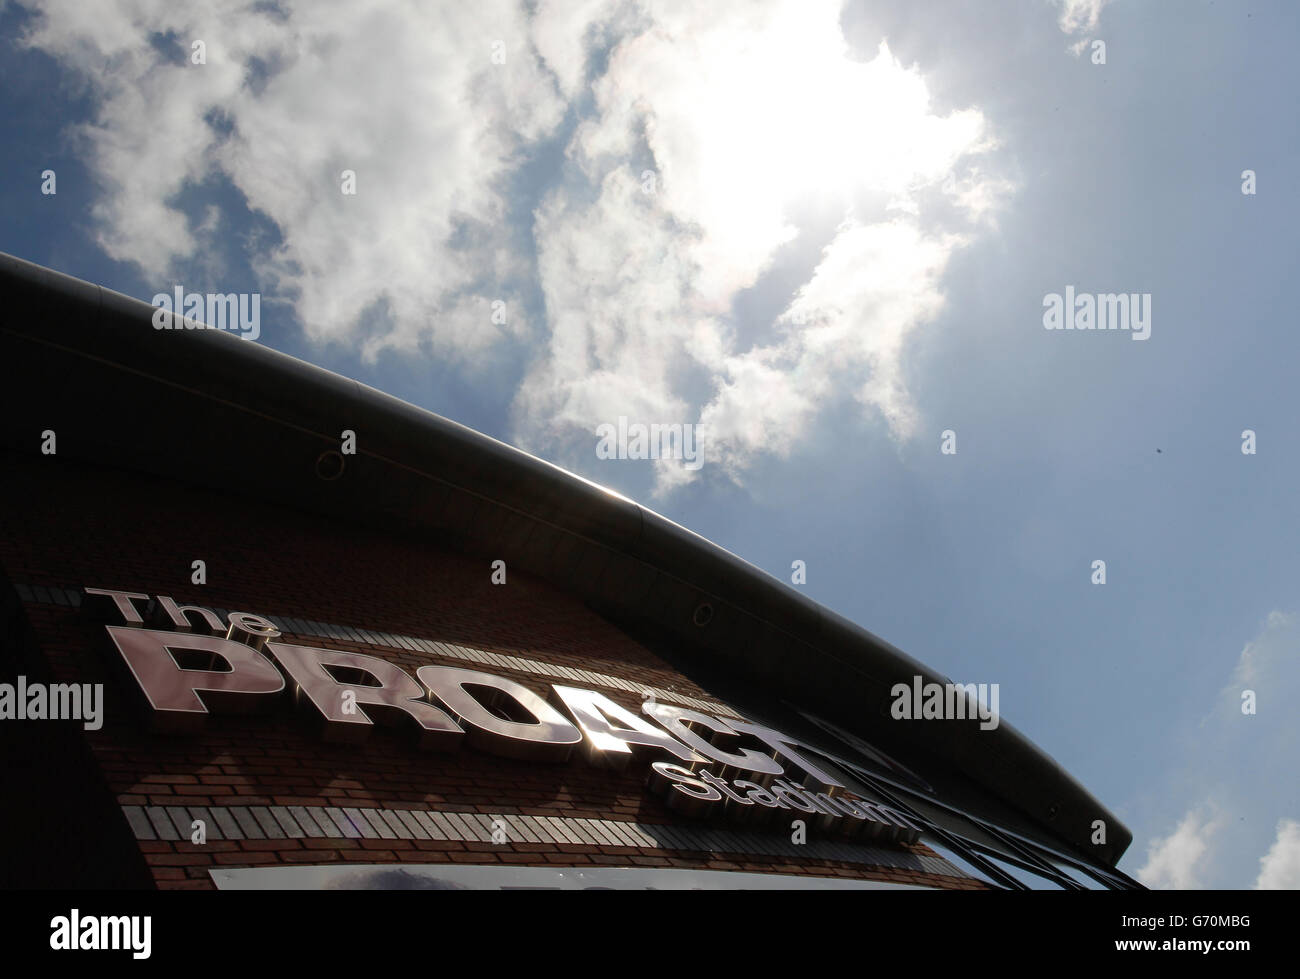 Le soleil brille sur le stade Proact de Chesterfield avant le match de la Sky Bet League Two au stade Proact, Chesterfield. Banque D'Images